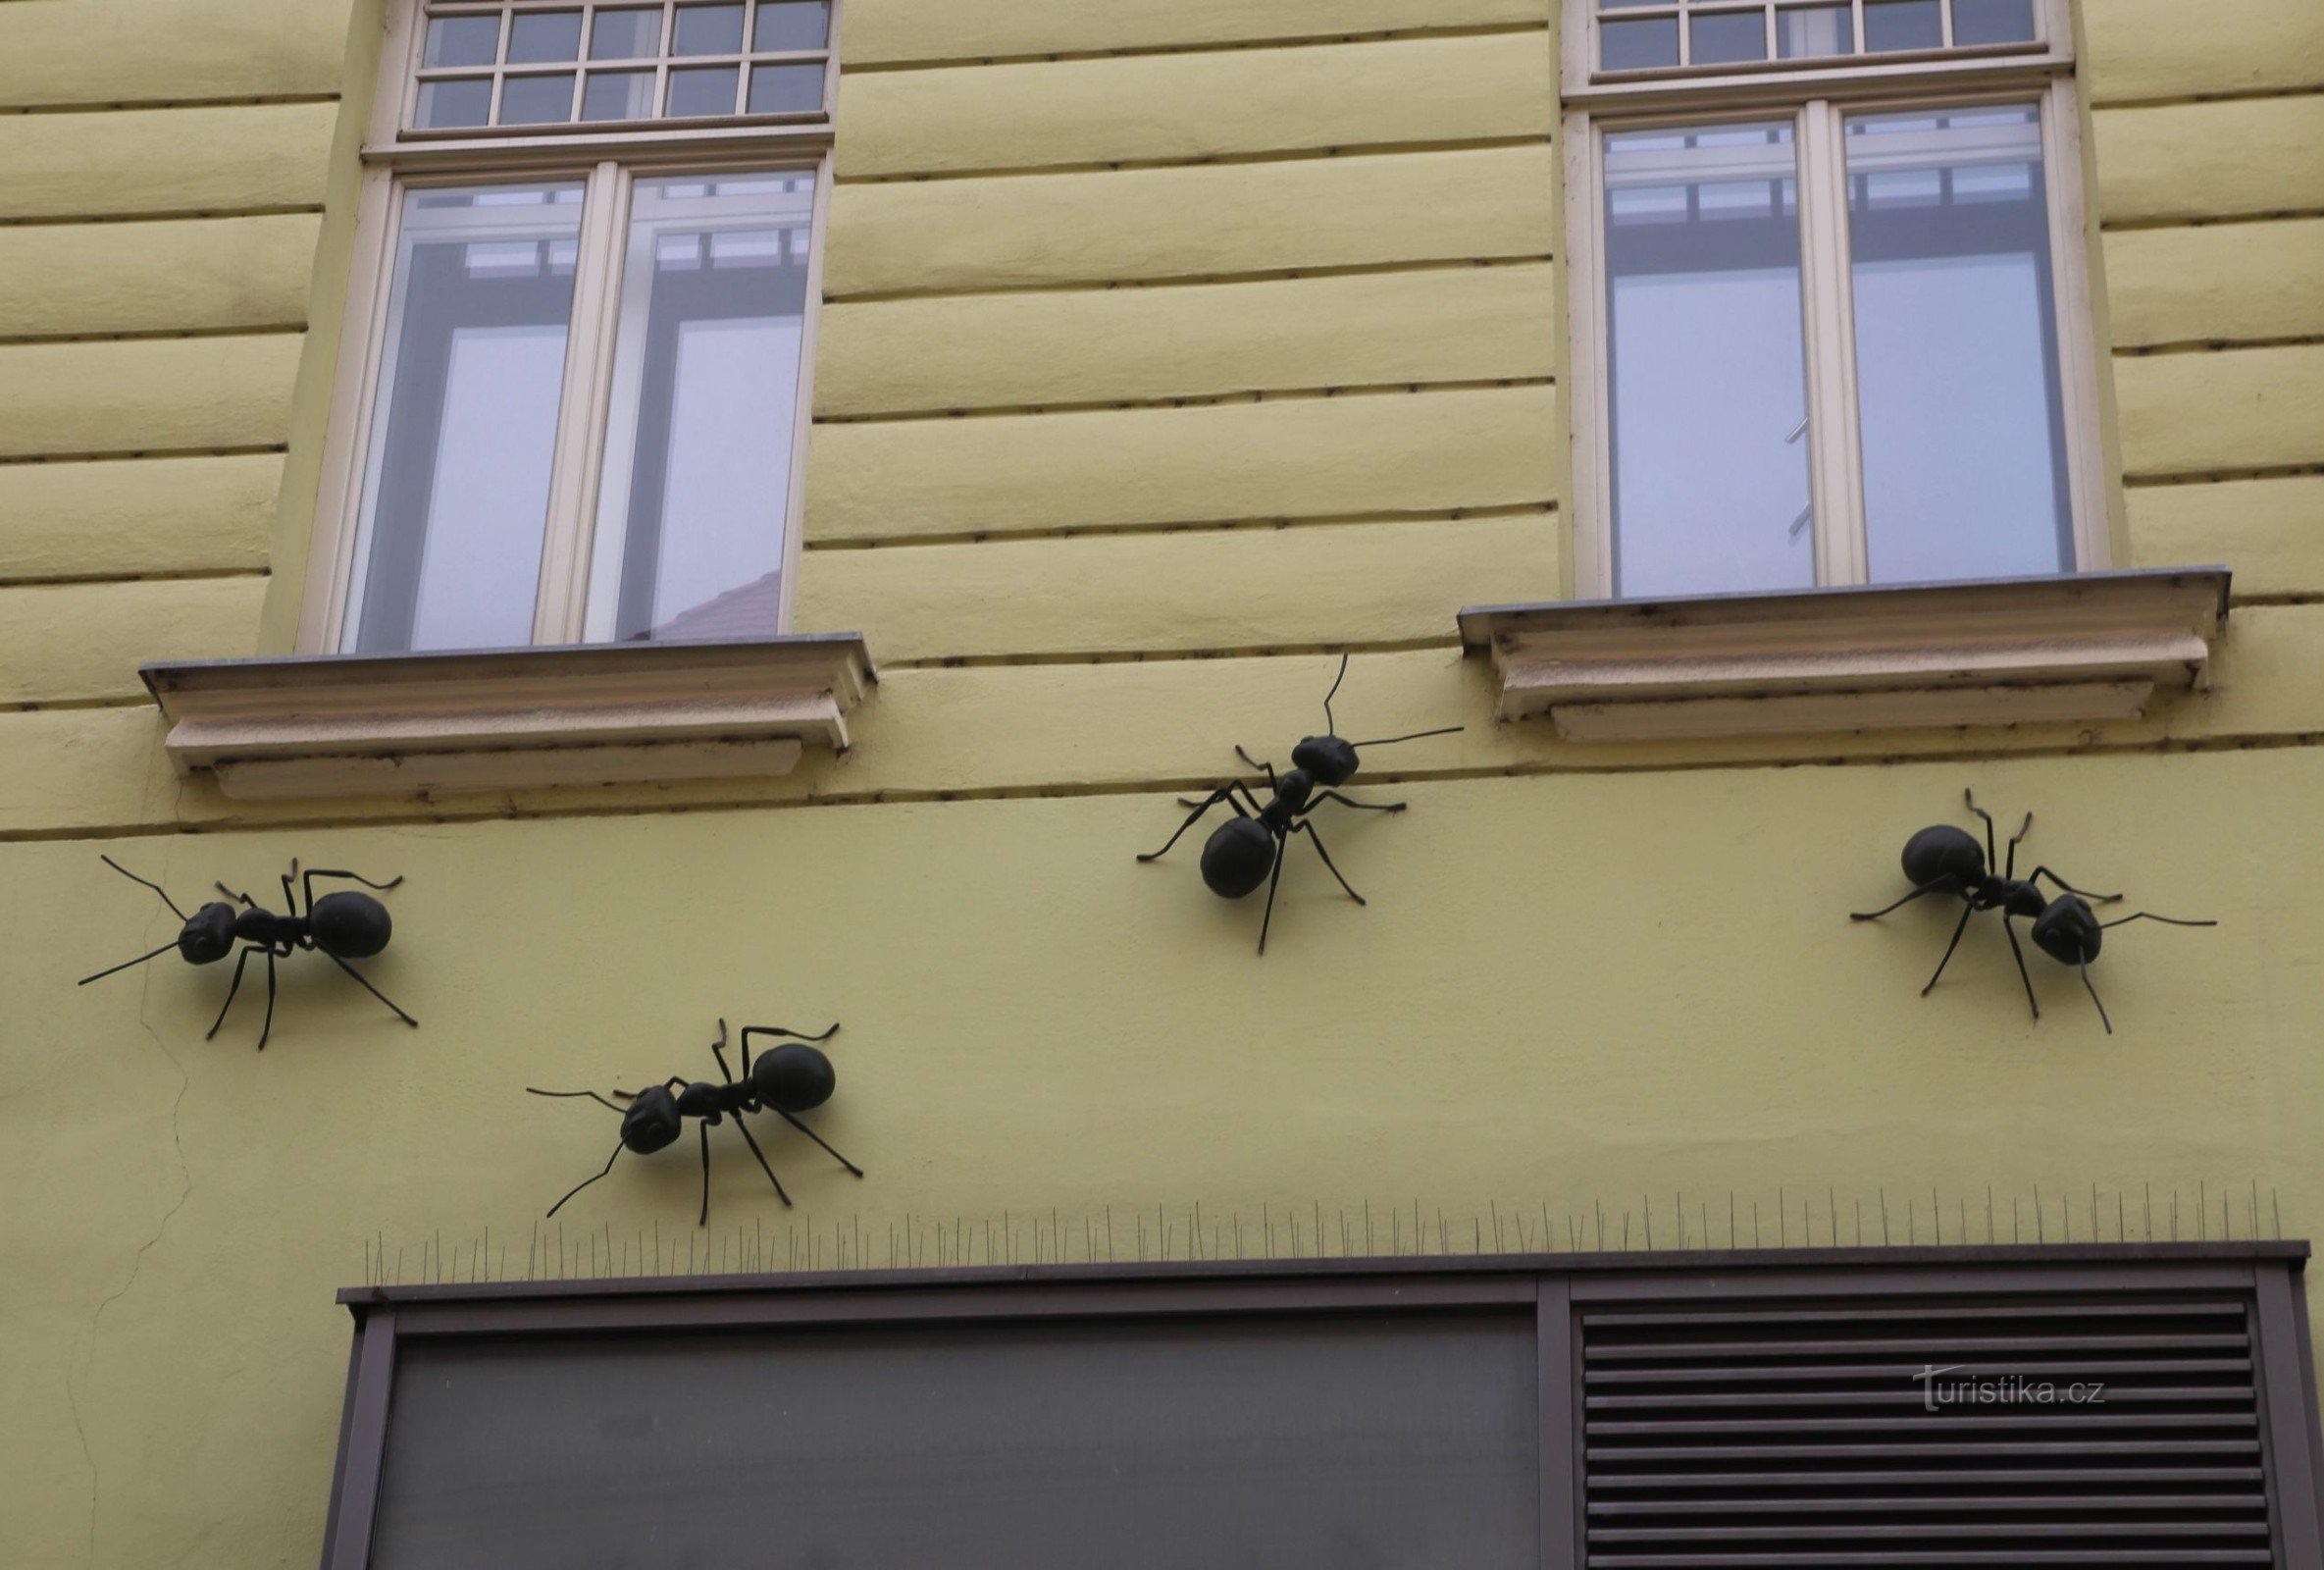 Ameisenskulpturen an der Fassade